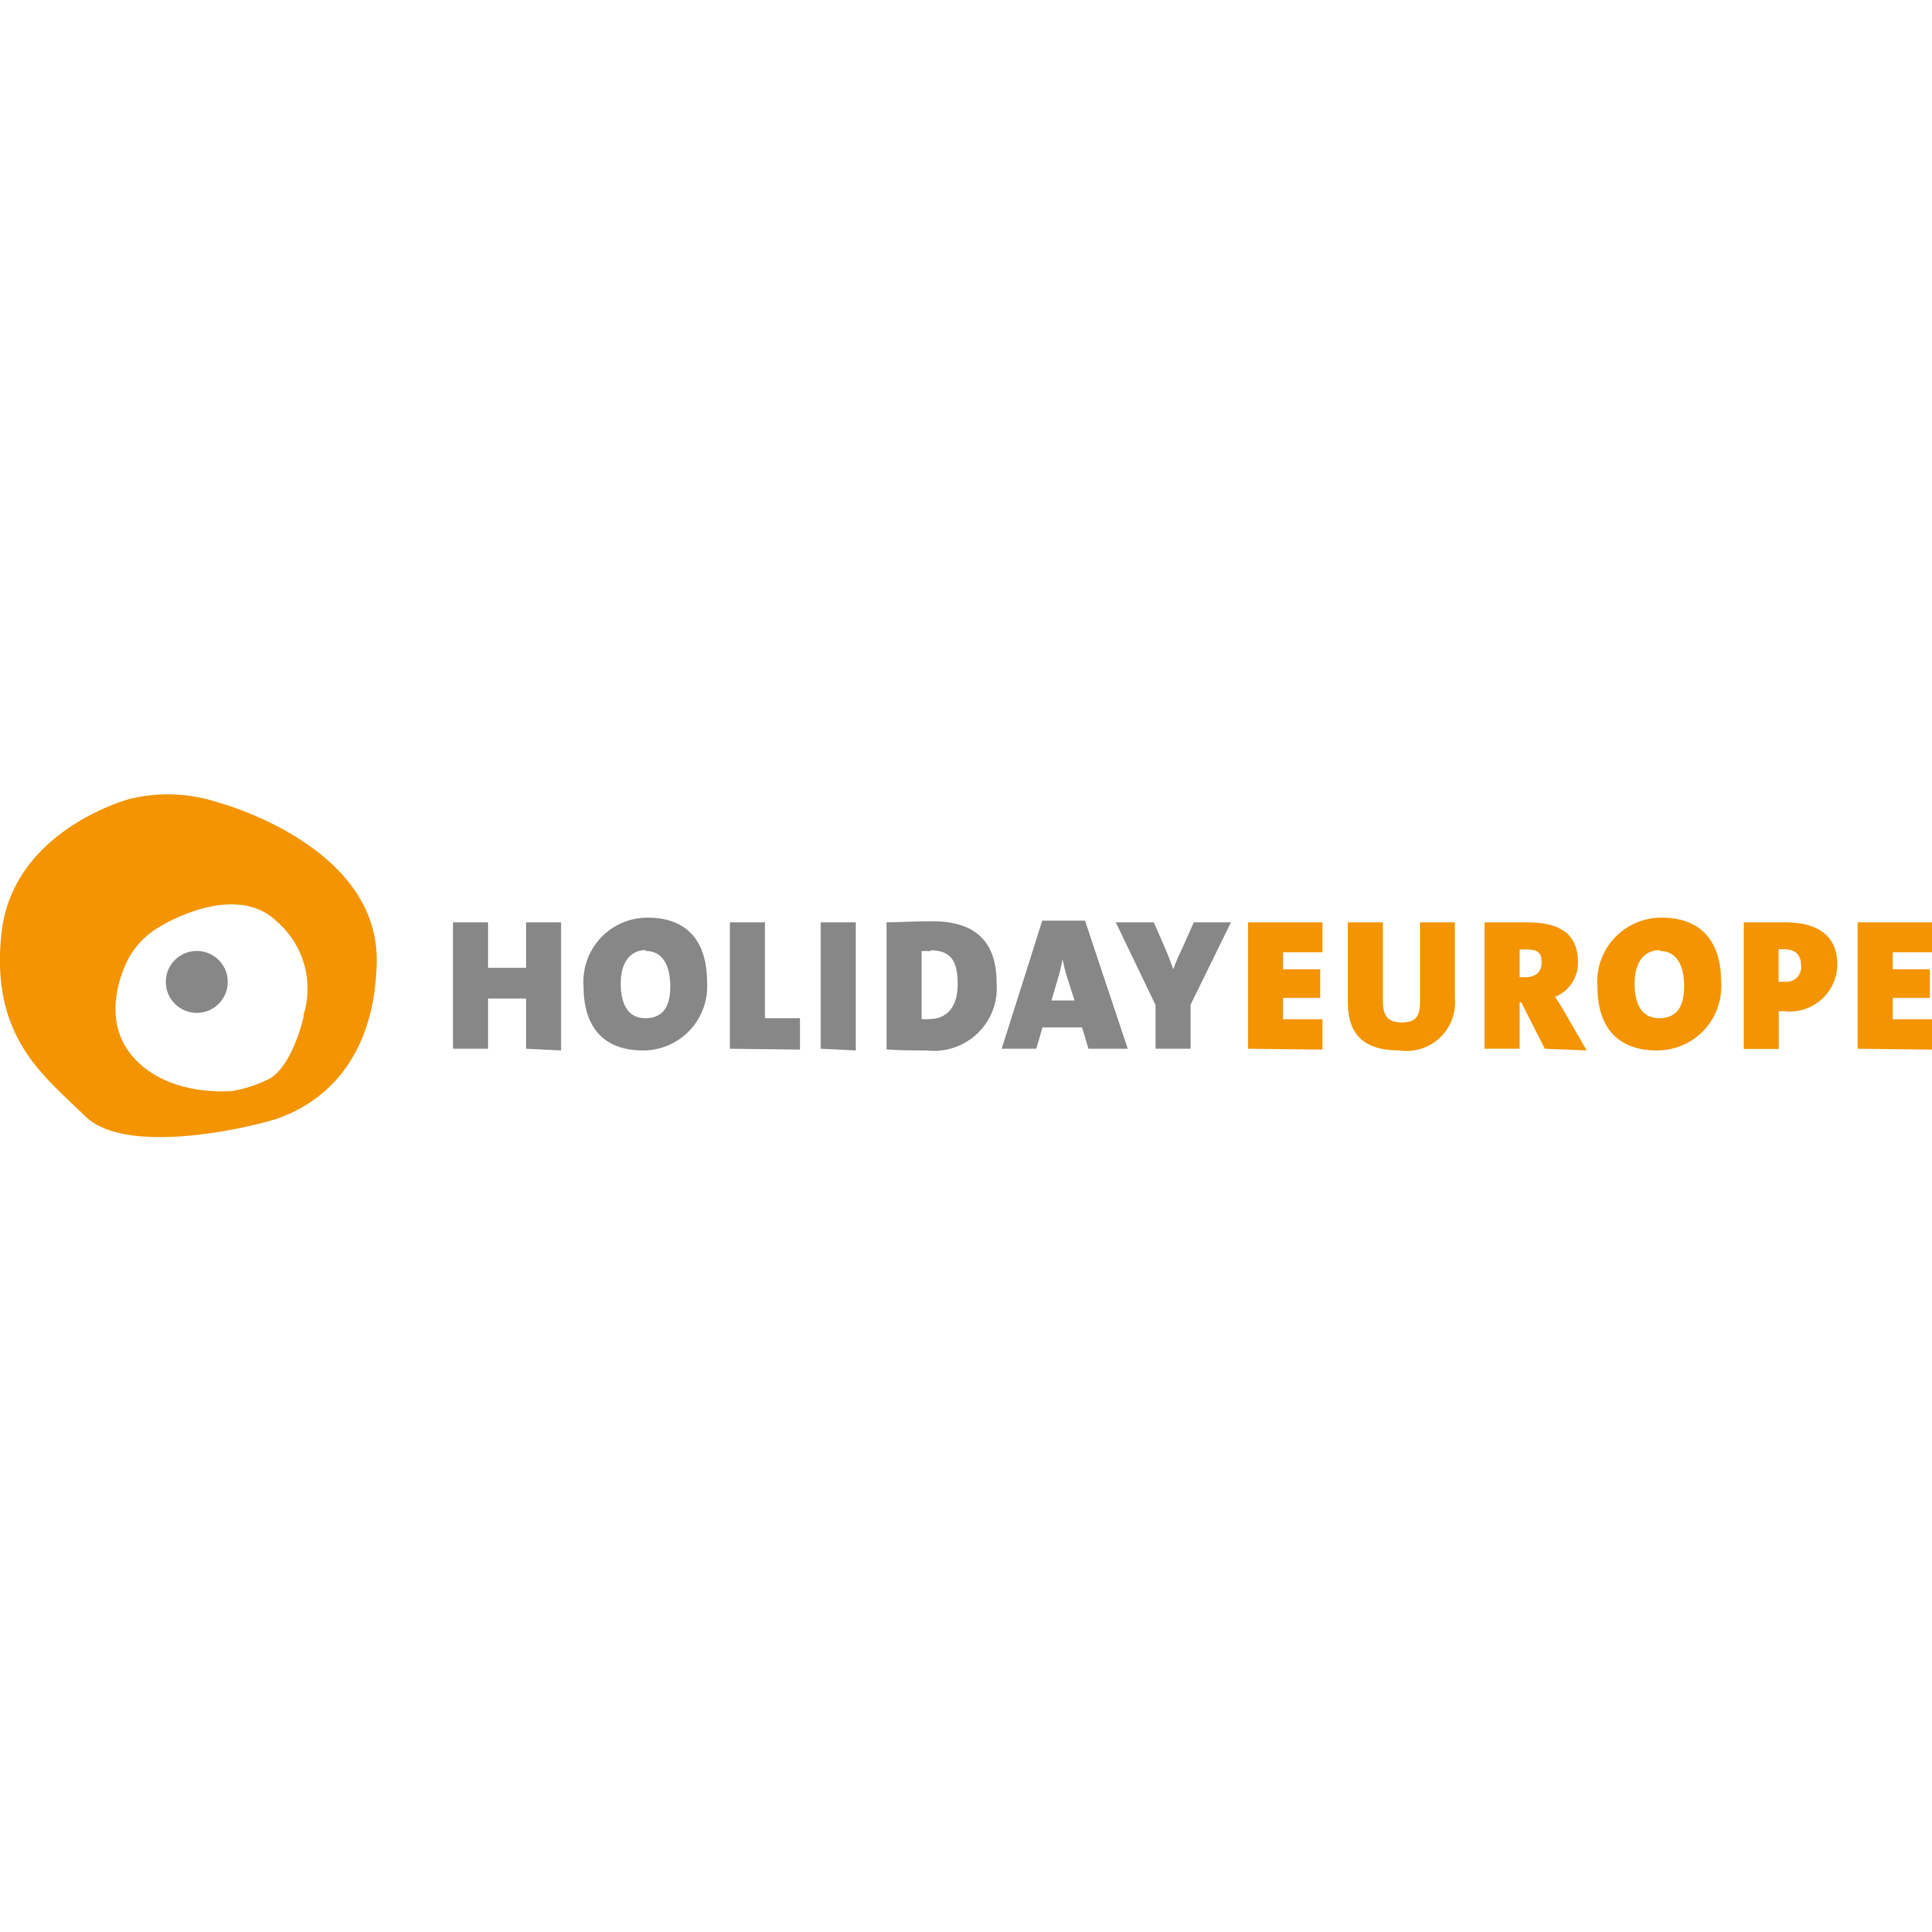 Holiday Europe Logo  Transparent Image